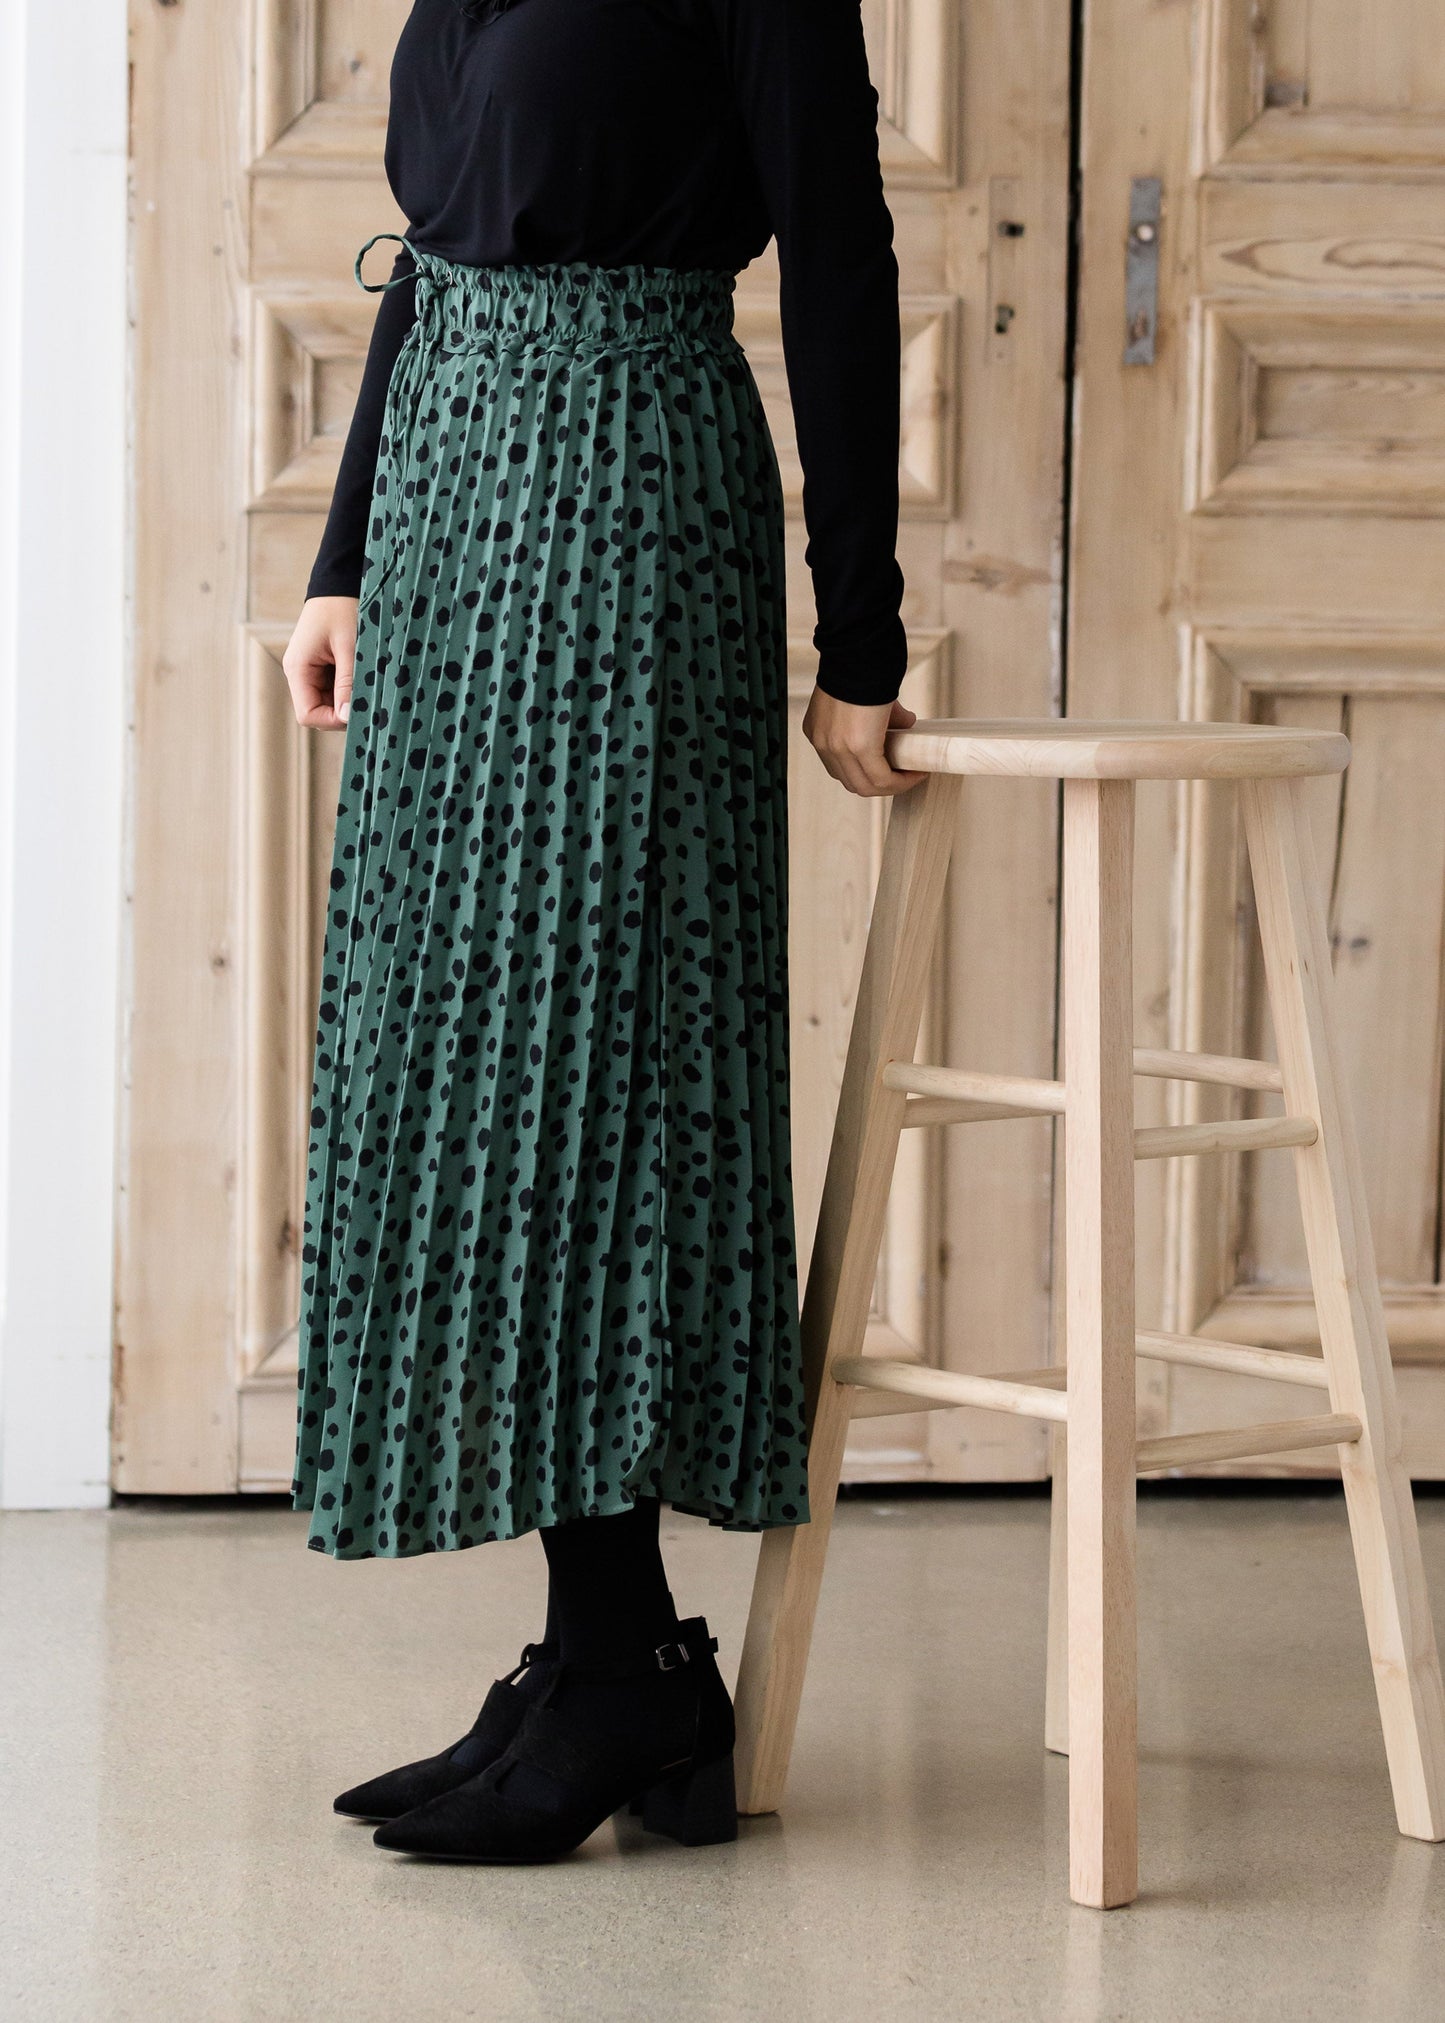 Olive Green Leopard Print Midi Skirt - FINAL SALE Skirts